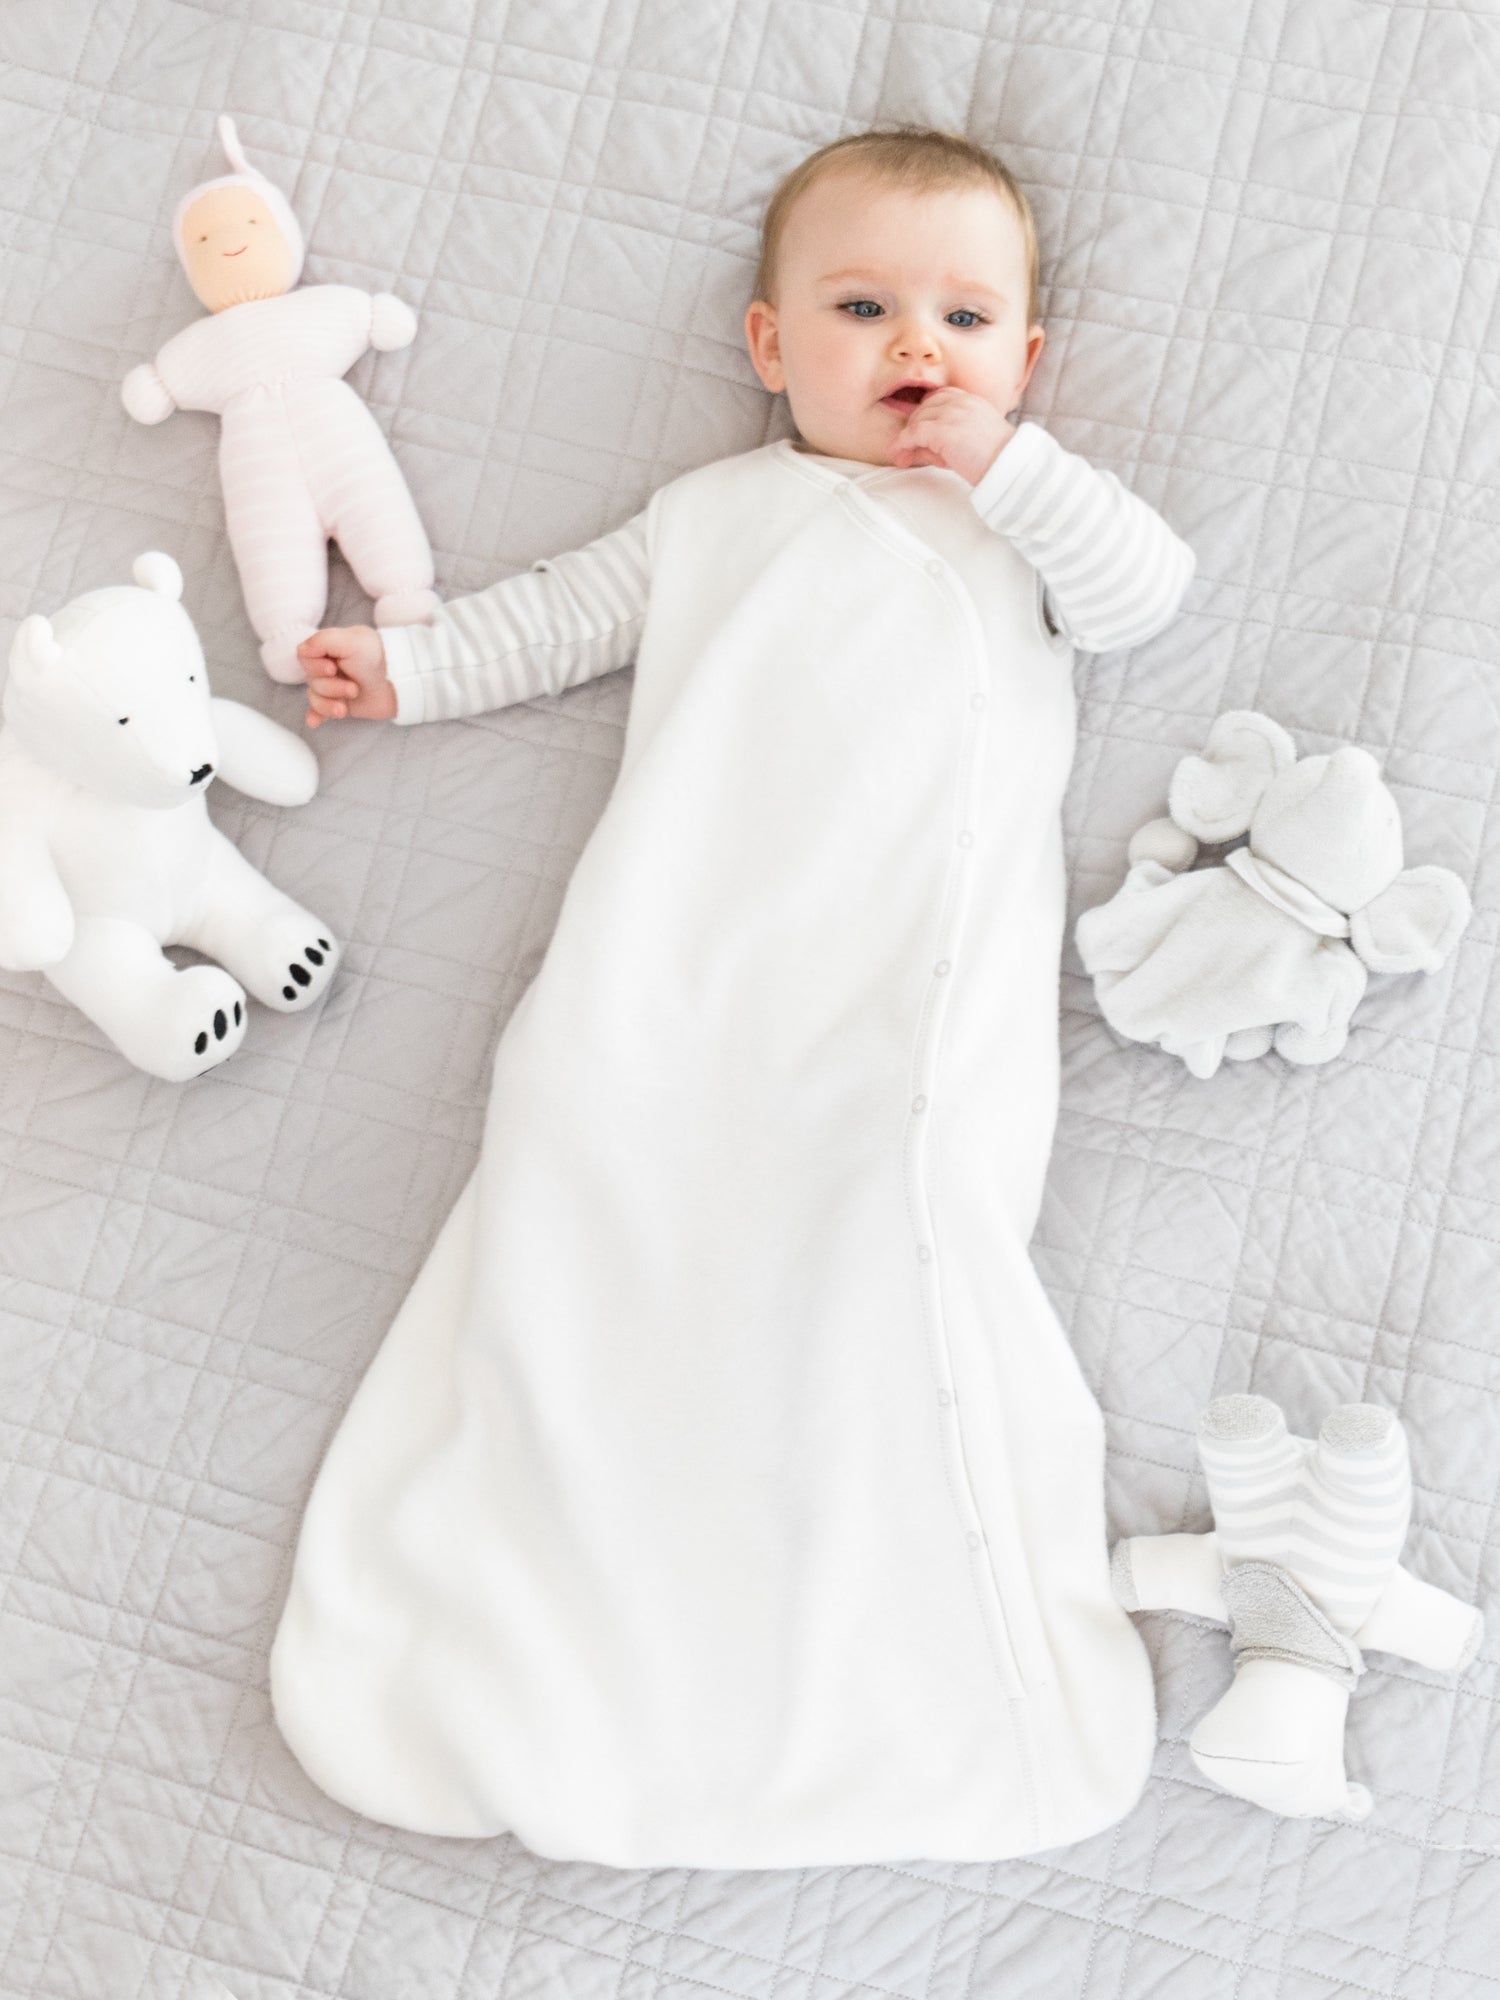 extra warm sleep sacks for babies